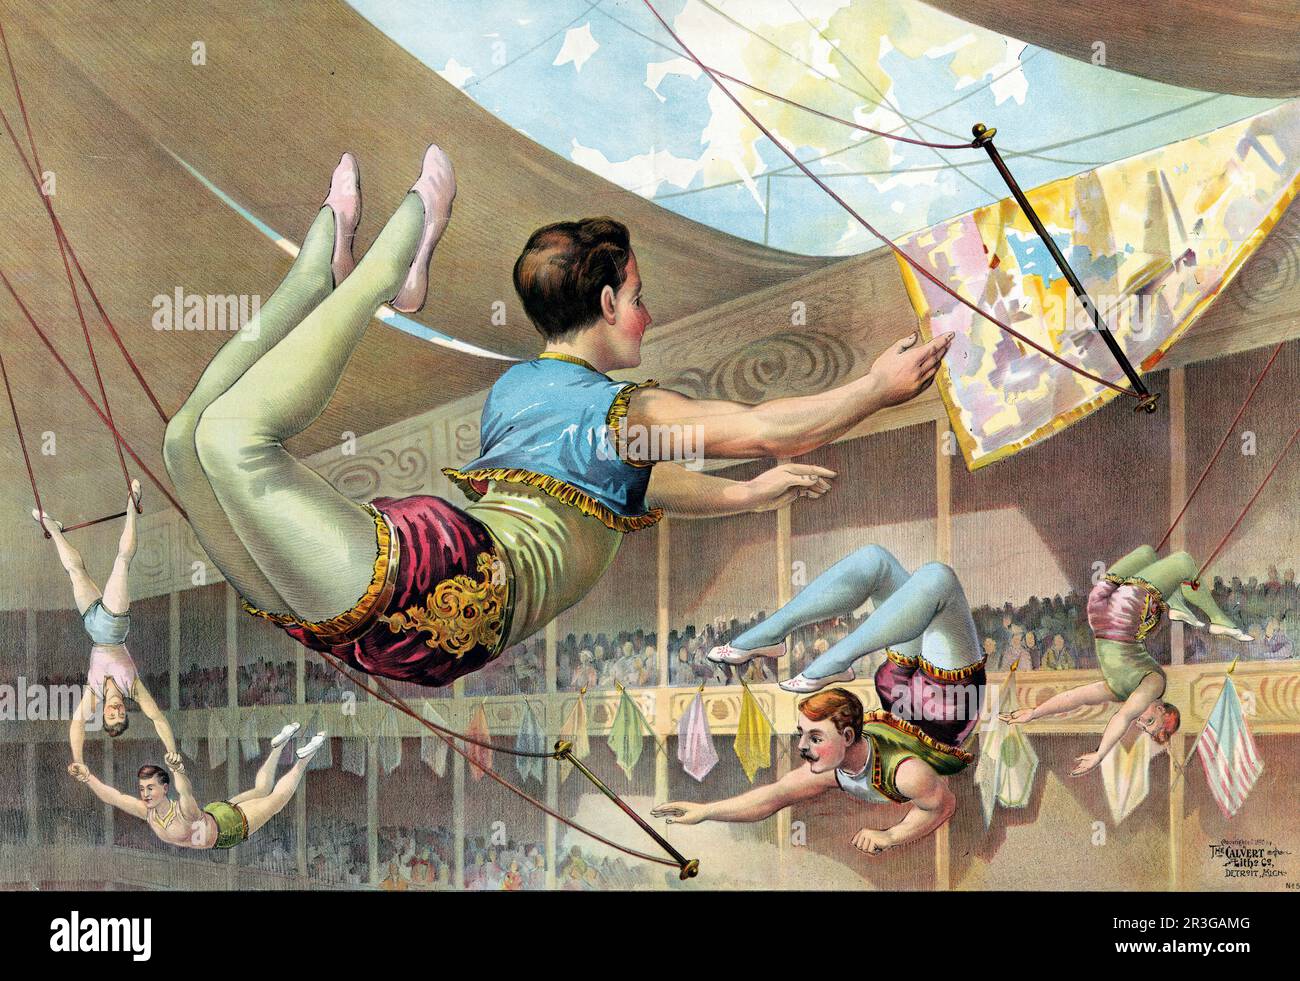 Vintage-Grafikdruck von fünf männlichen Akrobaten, die in einem Zirkus aufgetreten sind. Ungefähr 1890. Stockfoto